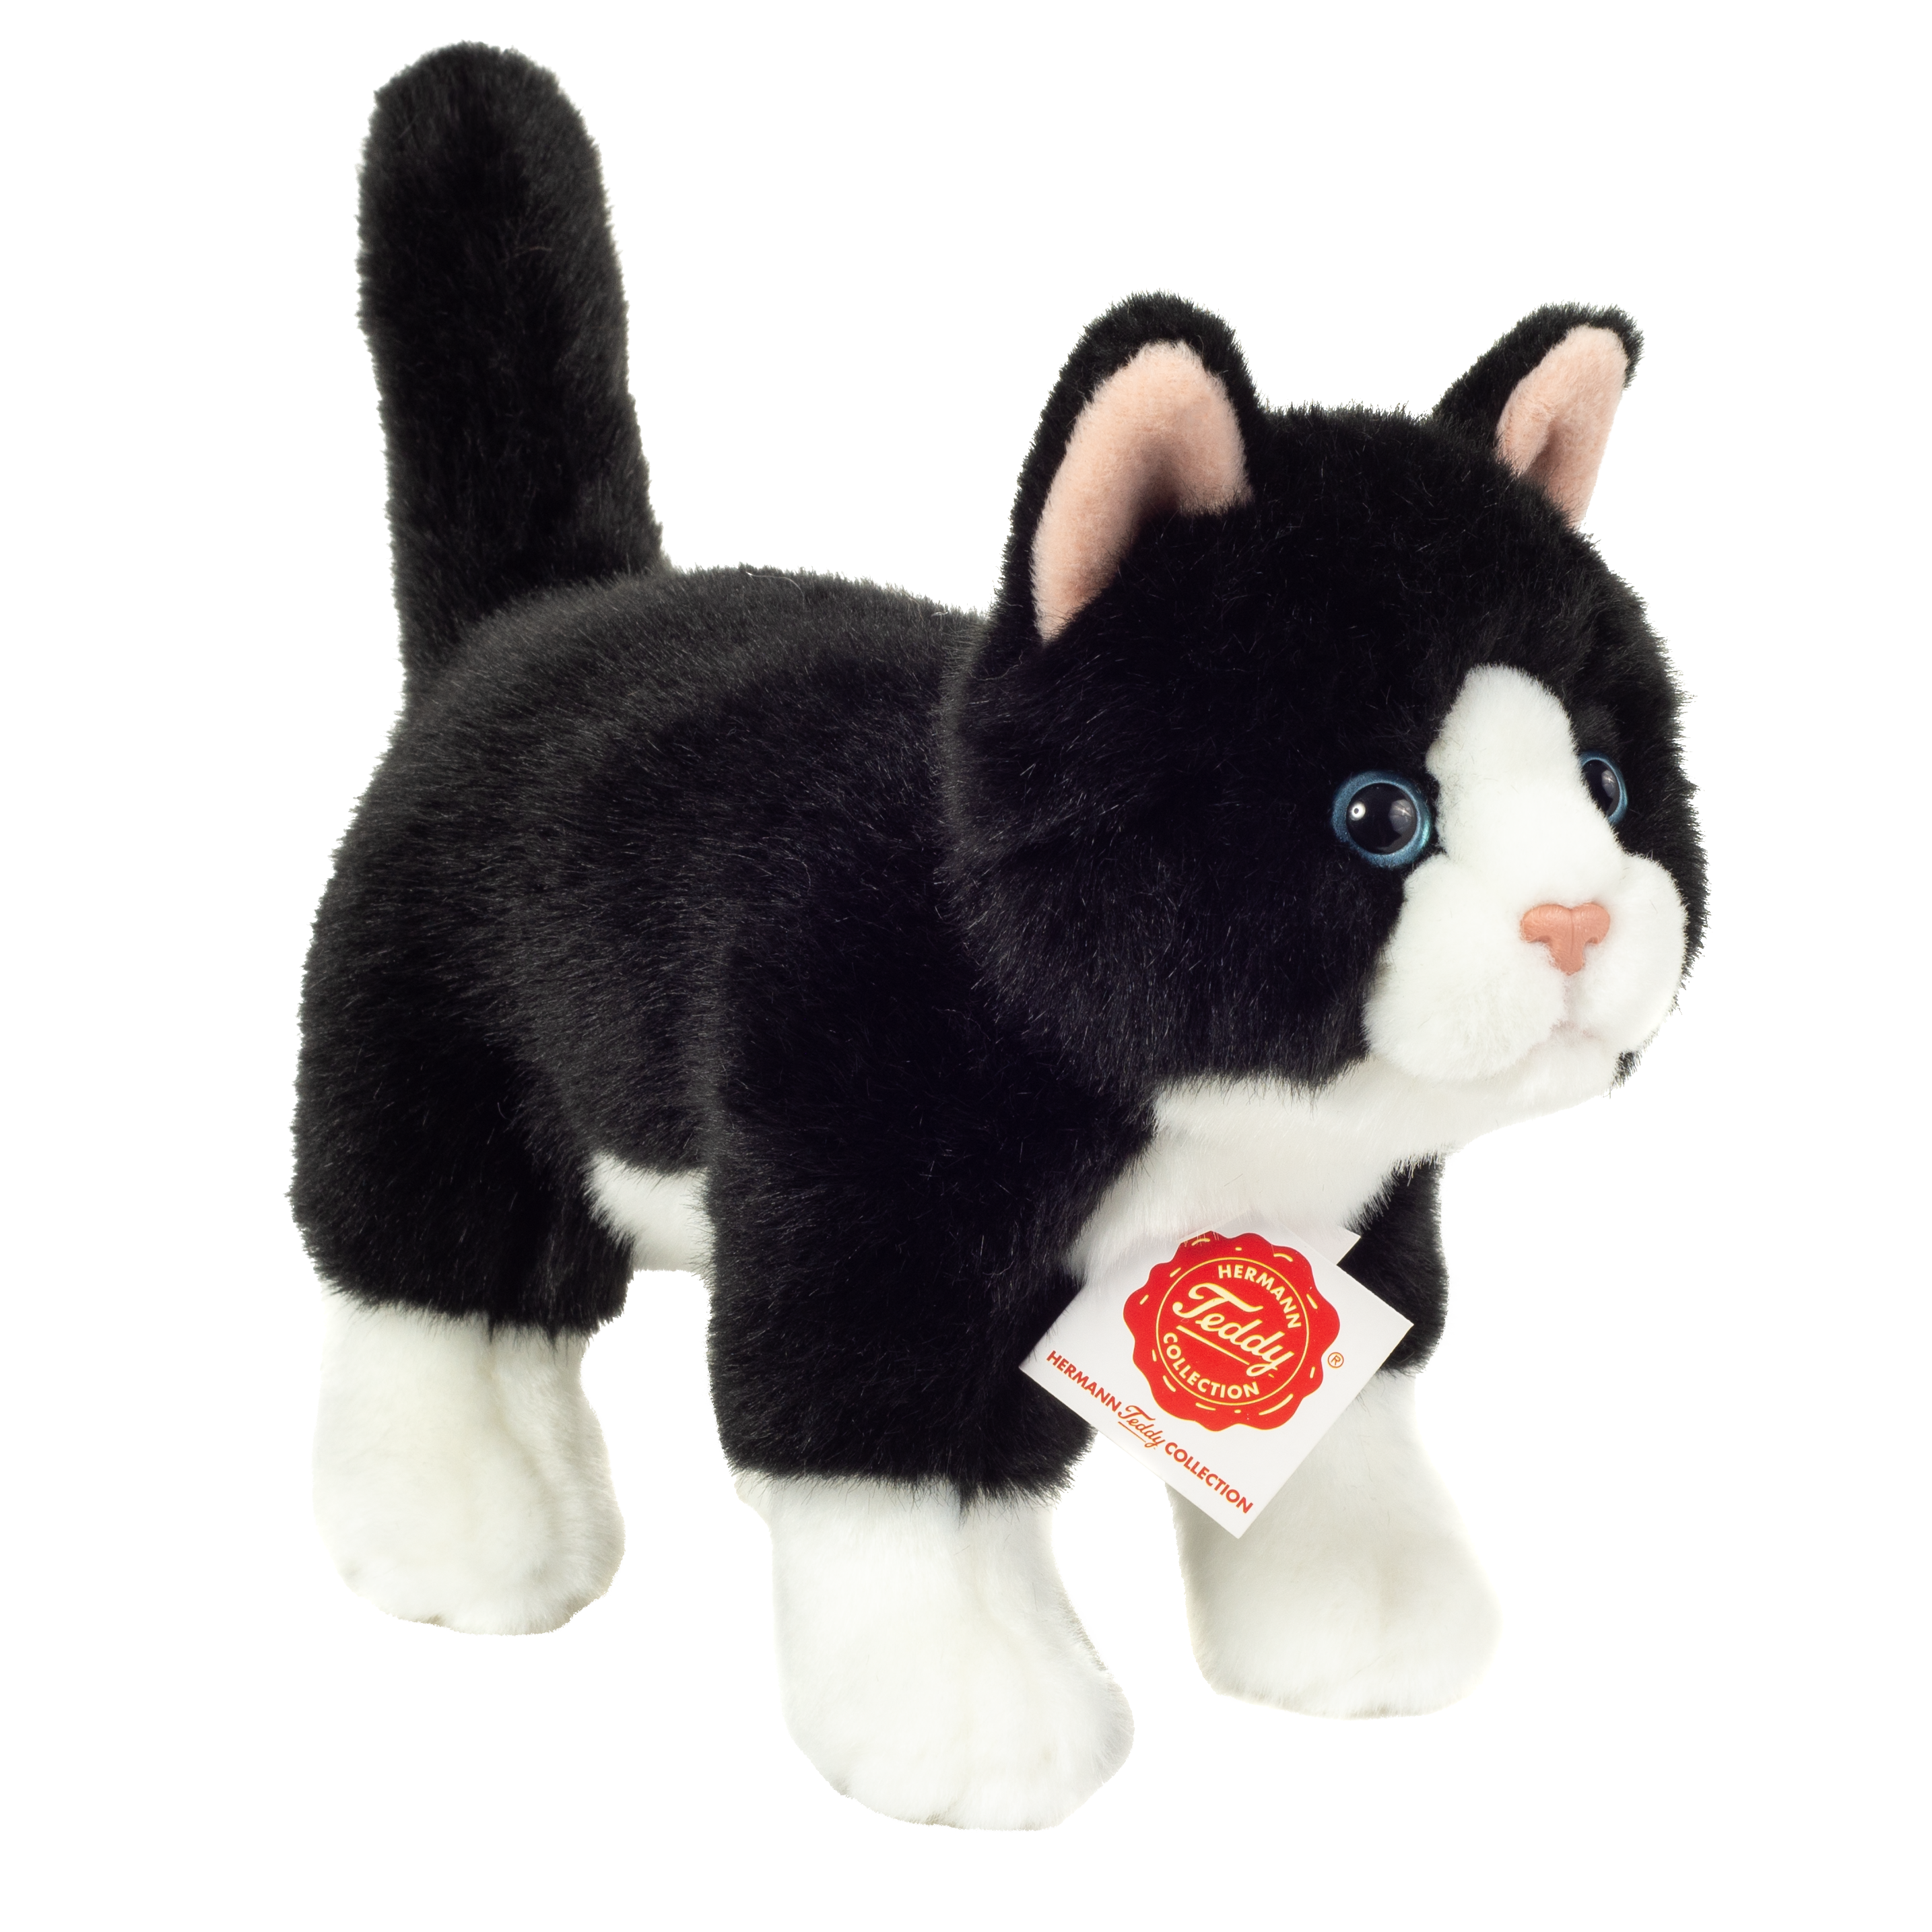 TEDDY HERMANN Plüschtier 20 cm schwarz/weiß stehend Katze